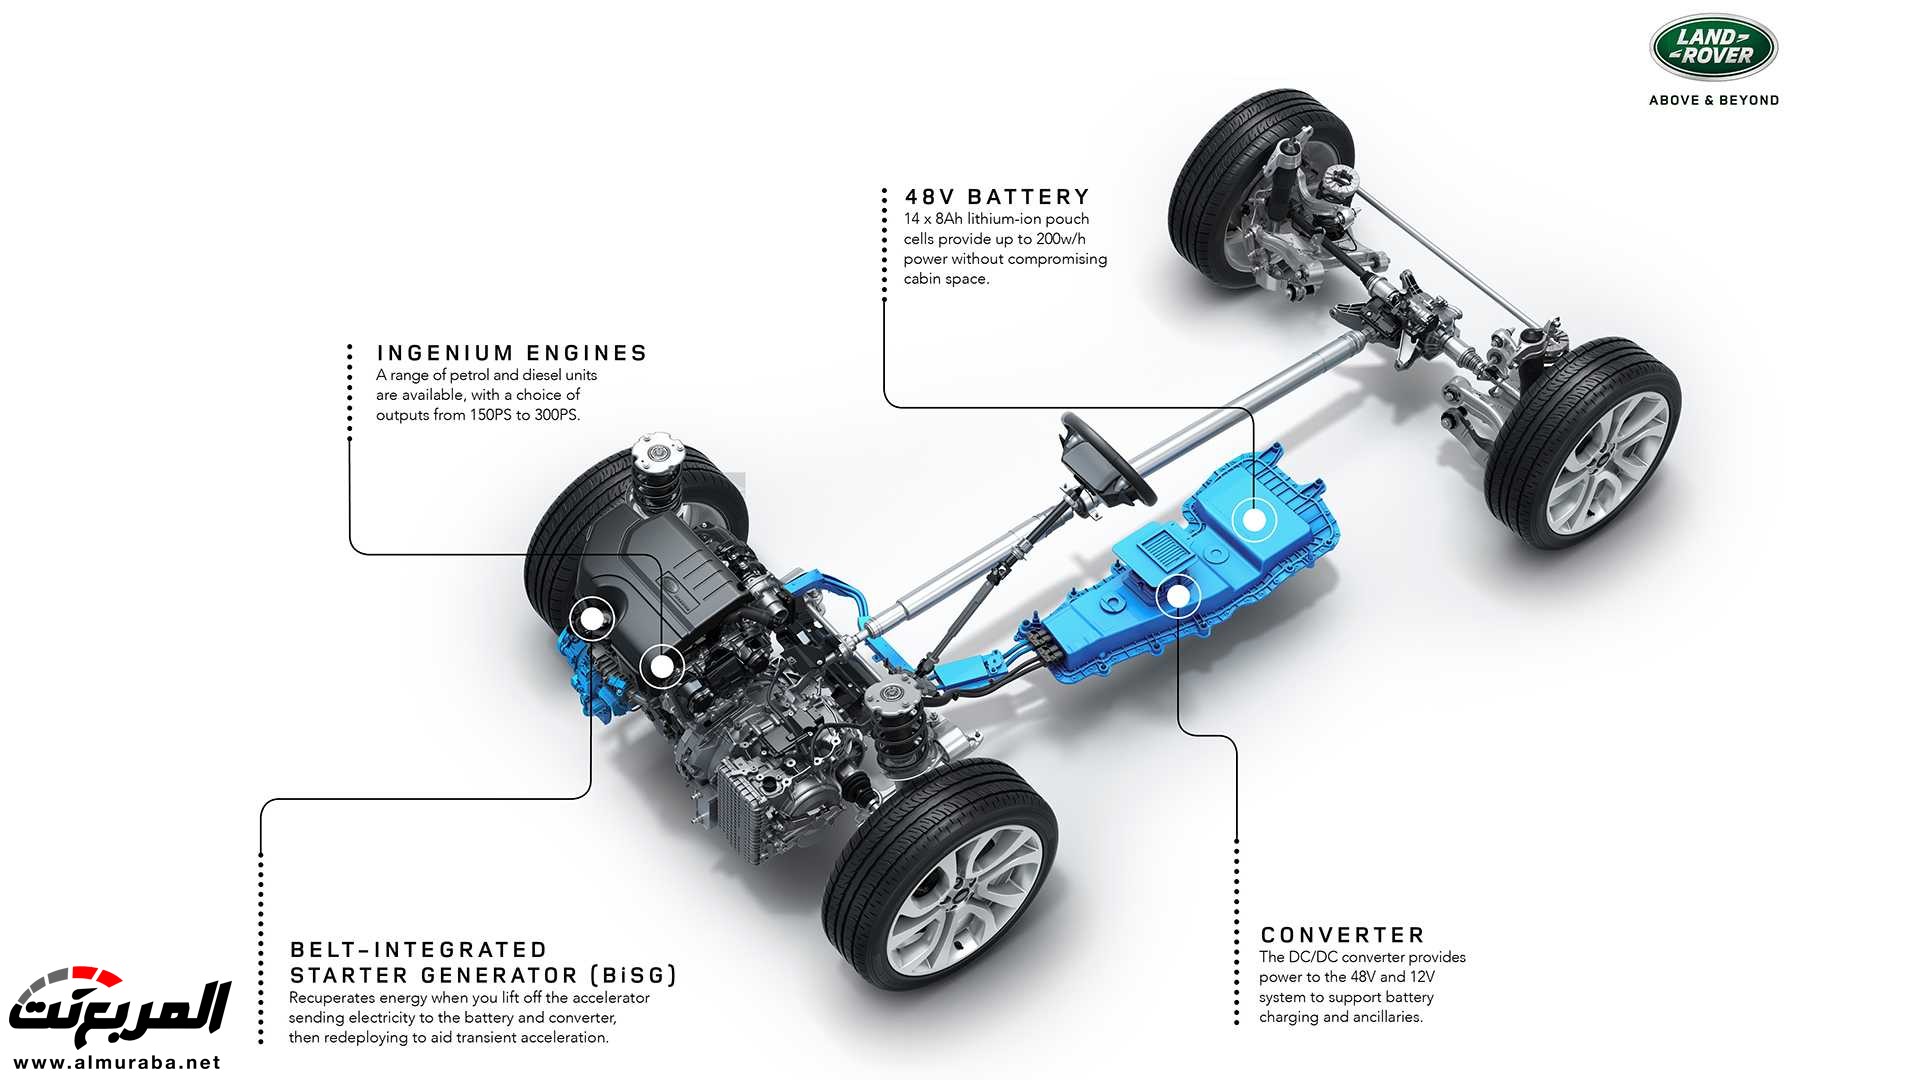 اهم 7 معلومات عن رنج روفر ايفوك 2020 الجديدة كلياً Range Rover Evoque 335